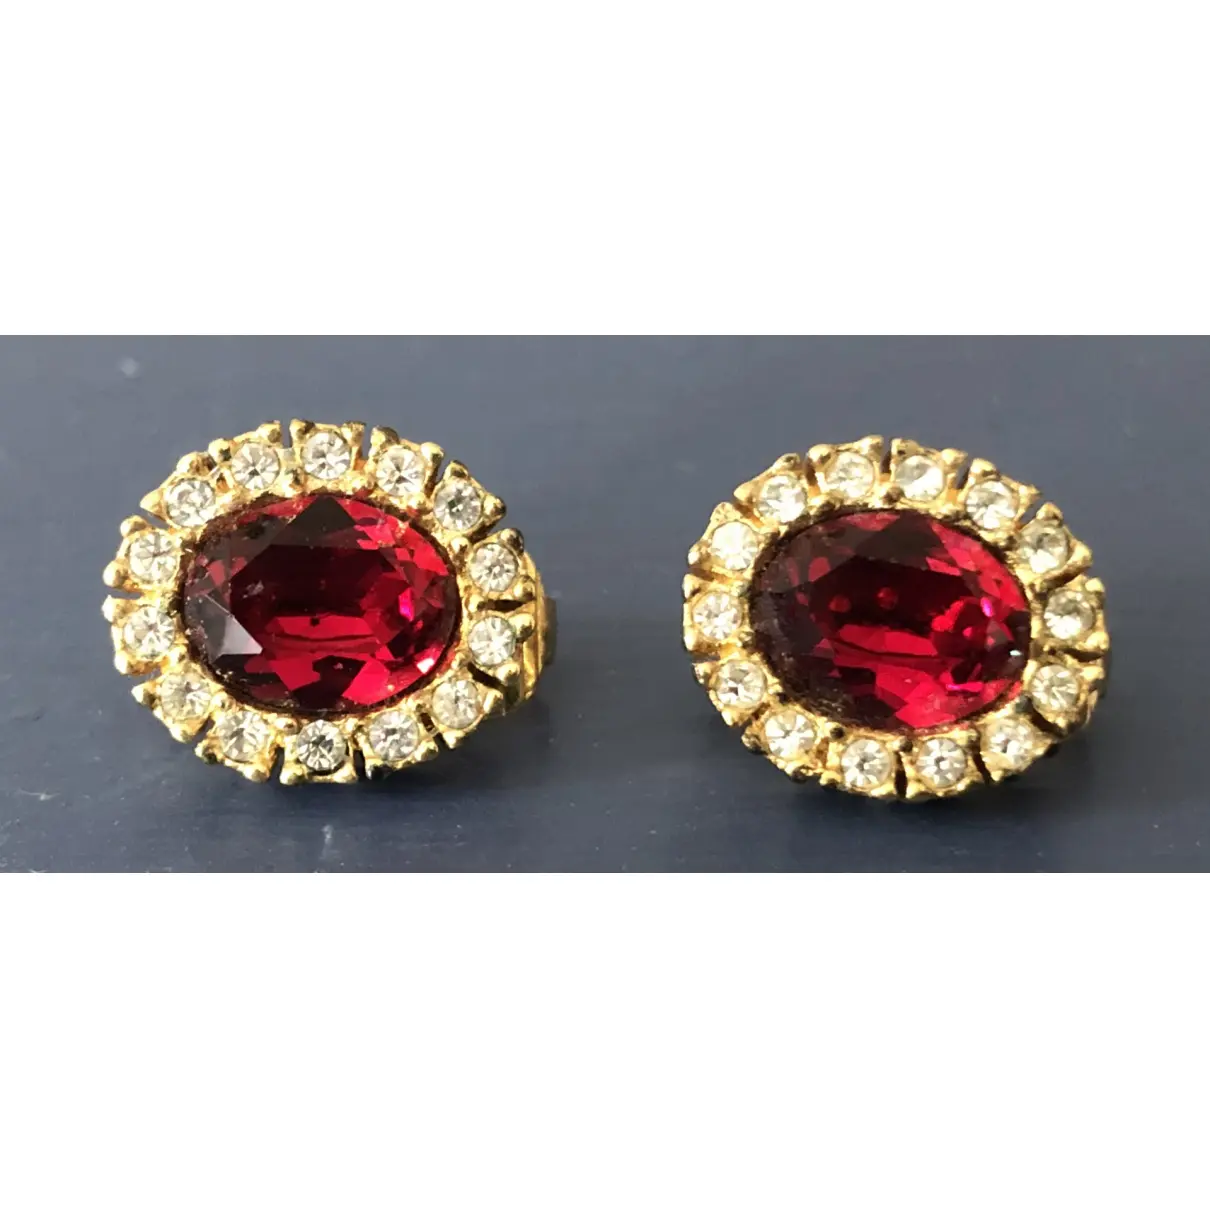 Buy Grosse Crystal earrings online